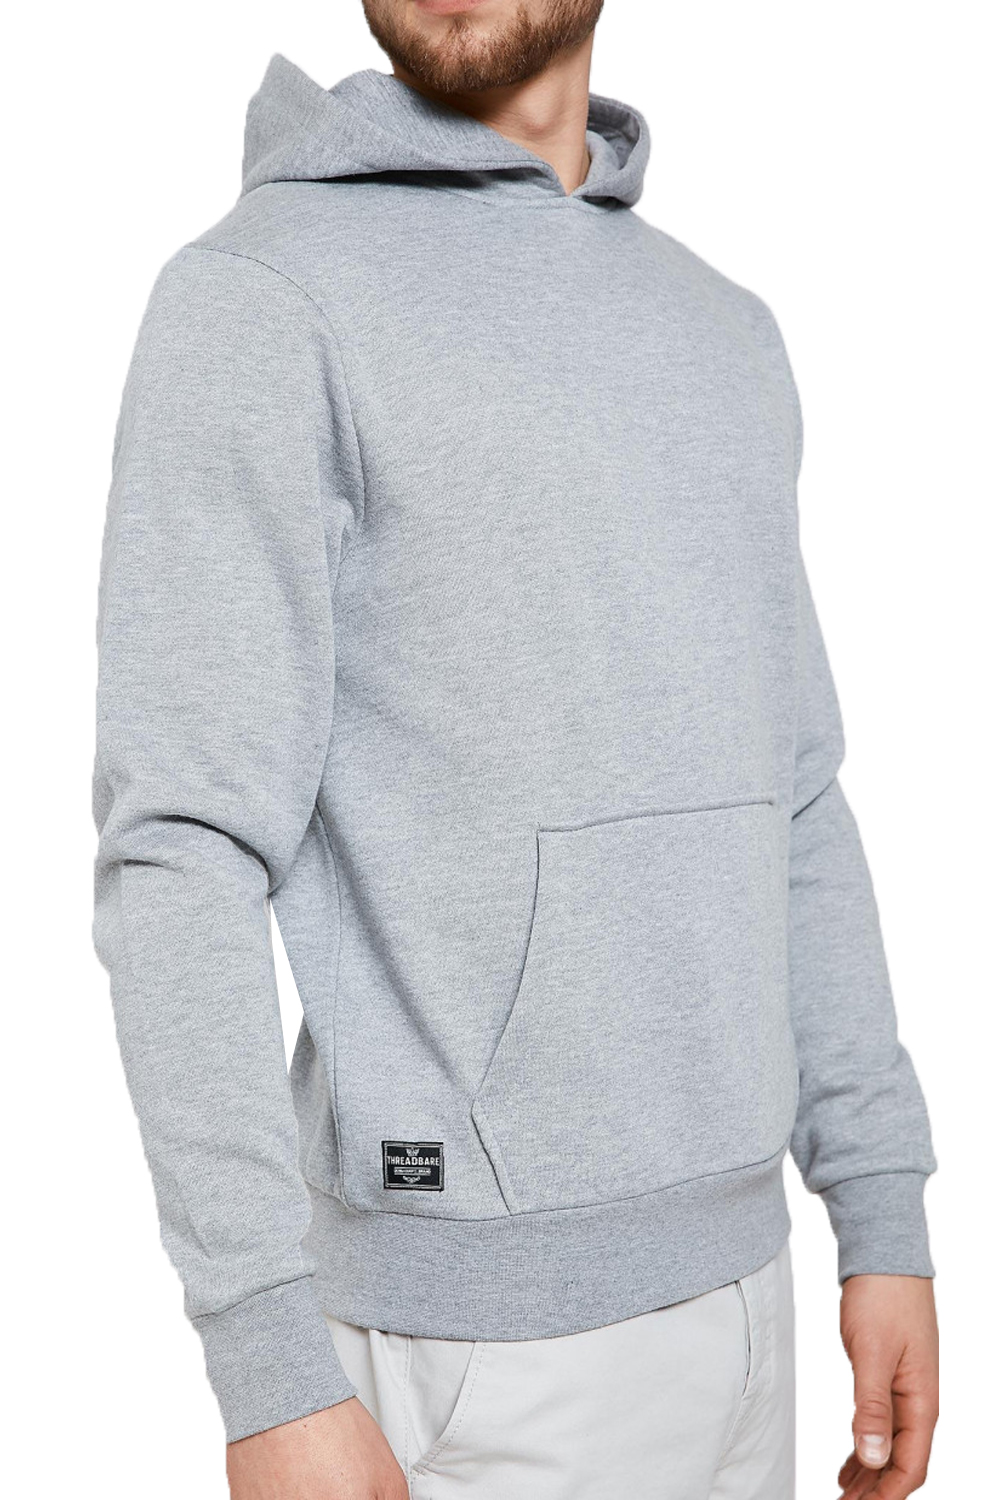 Threadbare Mens Trafford Designer Sweat Jacket Hooded Jumper Hoodie | eBay